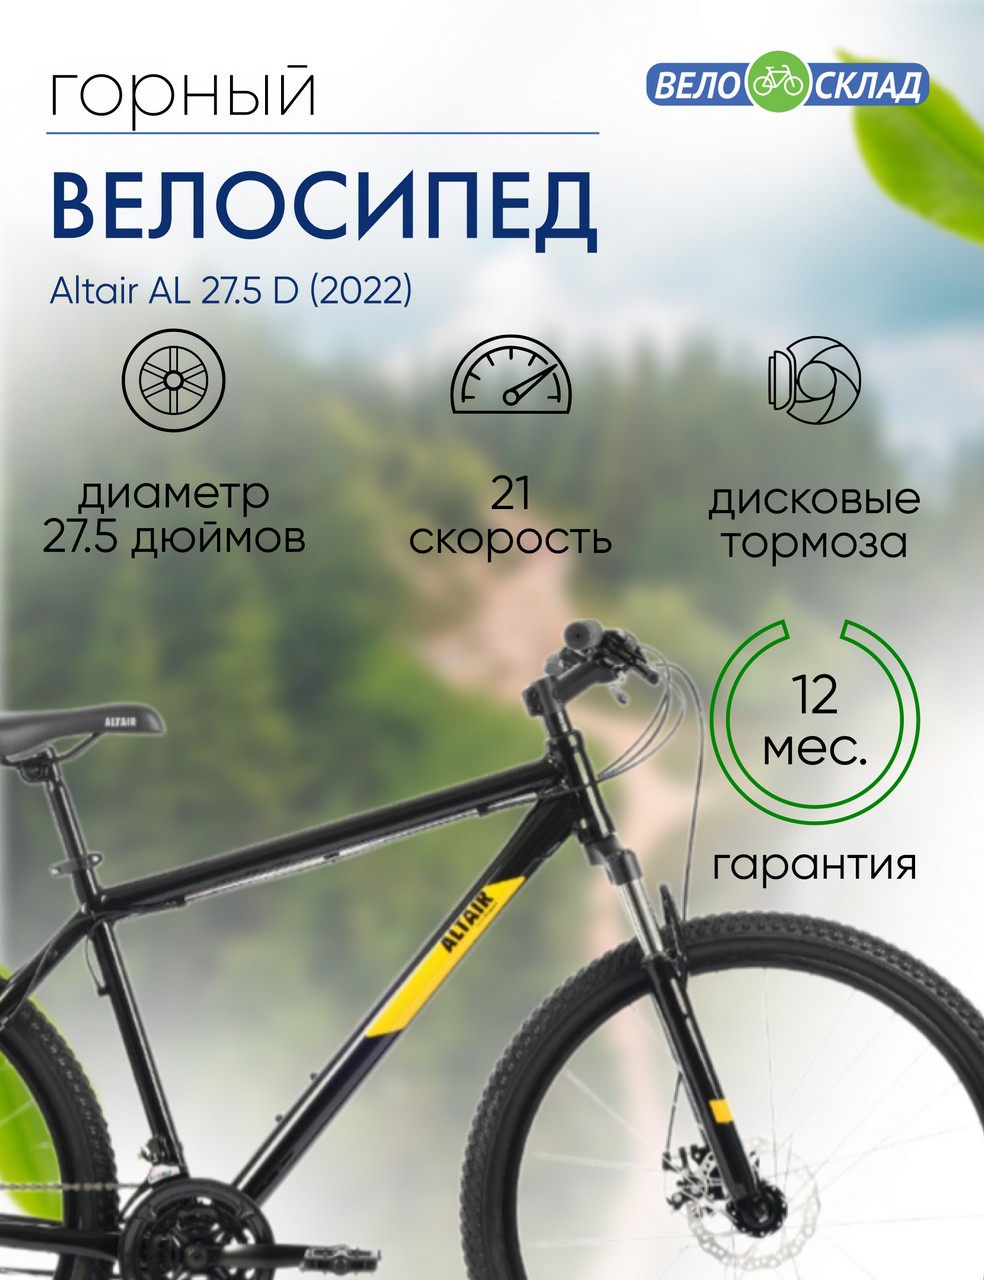 Горный велосипед Altair AL 27.5 D, год 2022, цвет Черный-Оранжевый, ростовка 15